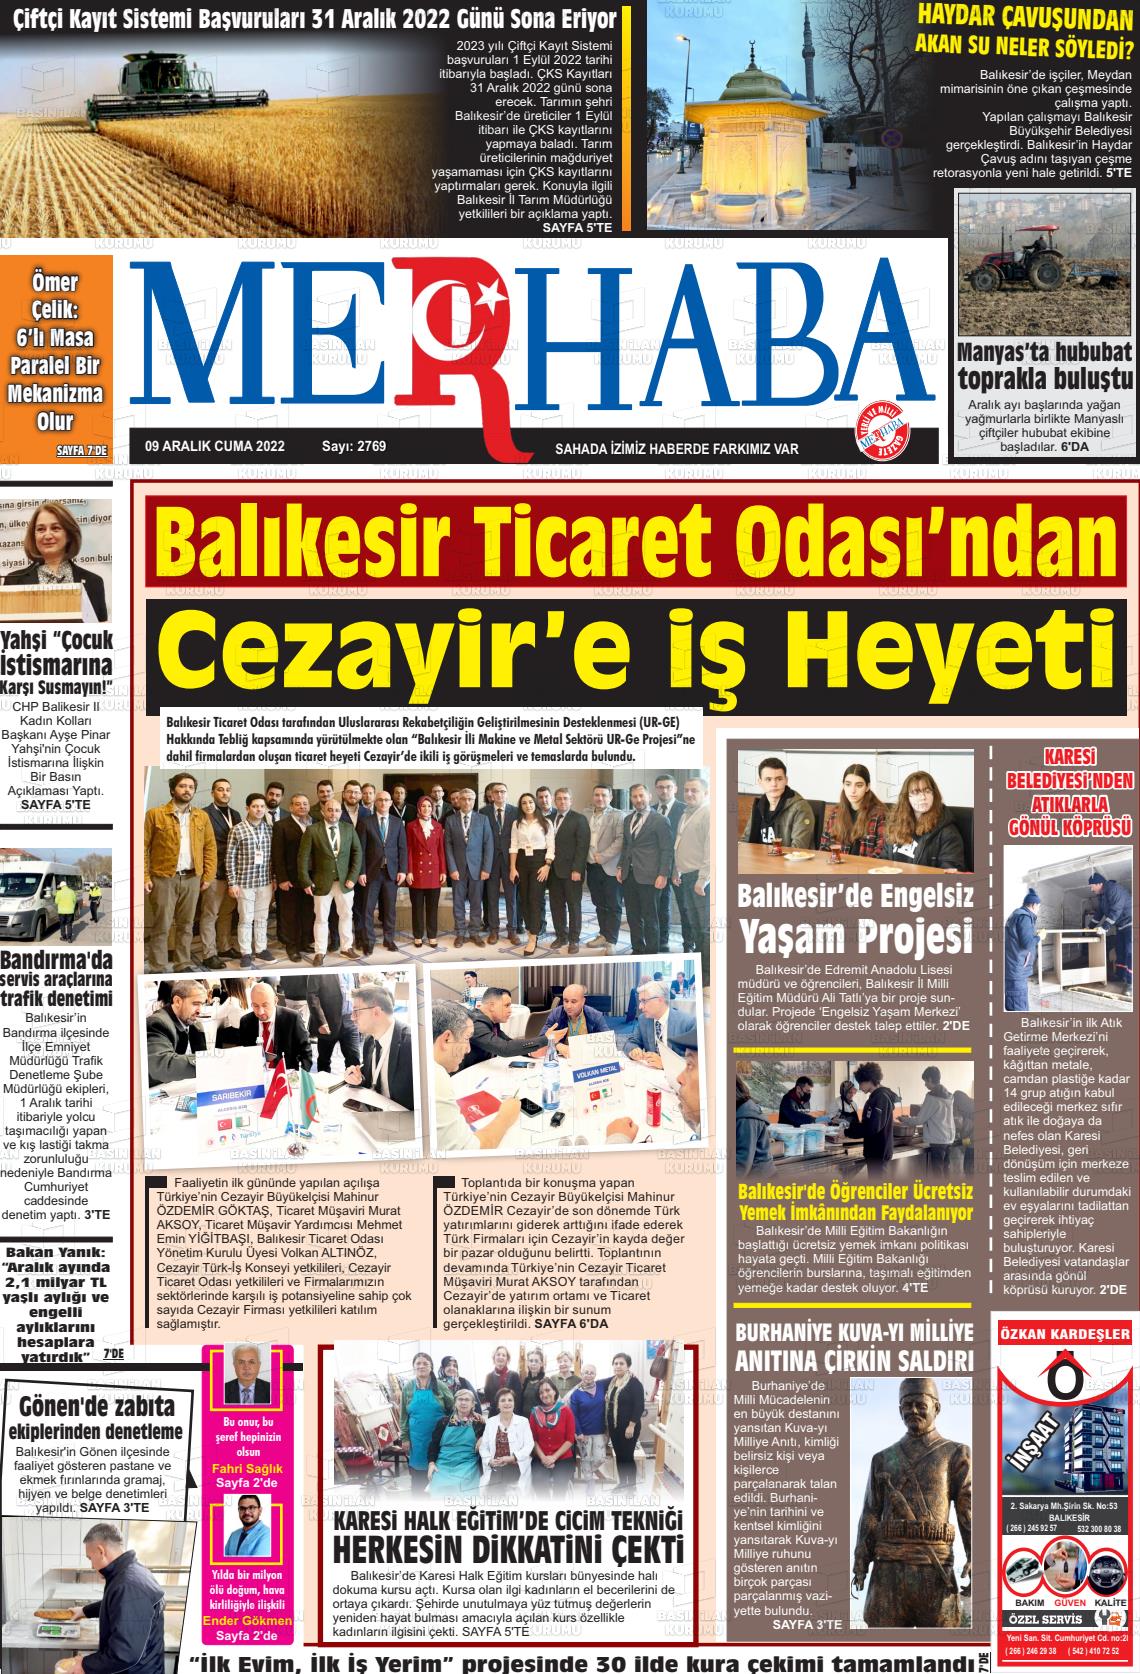 09 Aralık 2022 Büyükşehir Merhaba GAzetesi Gazete Manşeti